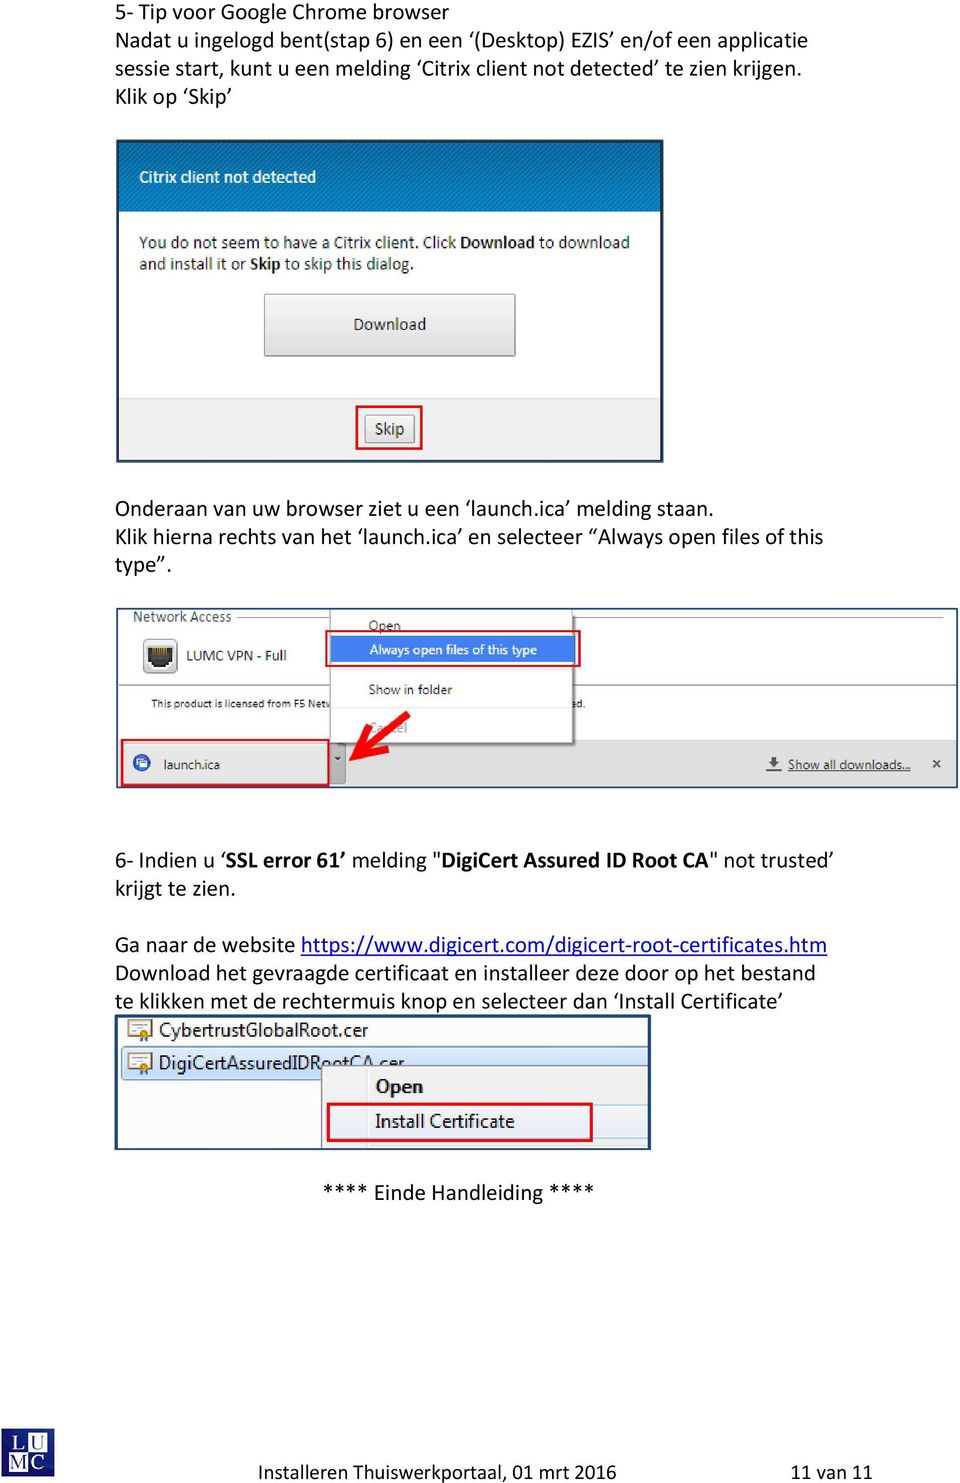 6- Indien u SSL error 61 melding "DigiCert Assured ID Root CA" not trusted krijgt te zien. Ga naar de website https://www.digicert.com/digicert-root-certificates.